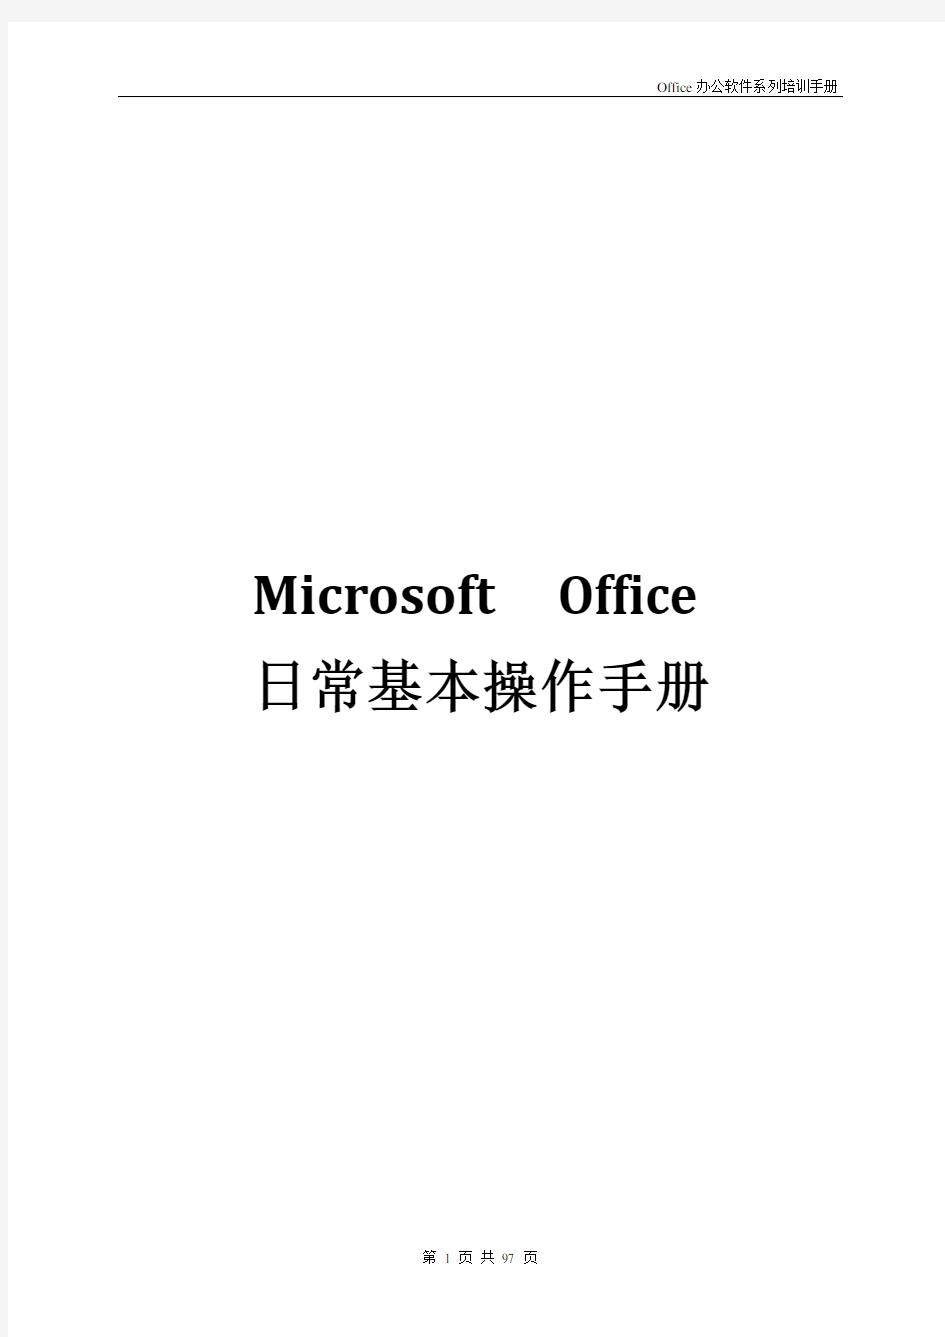 Microsoft--Office日常基本操作手册